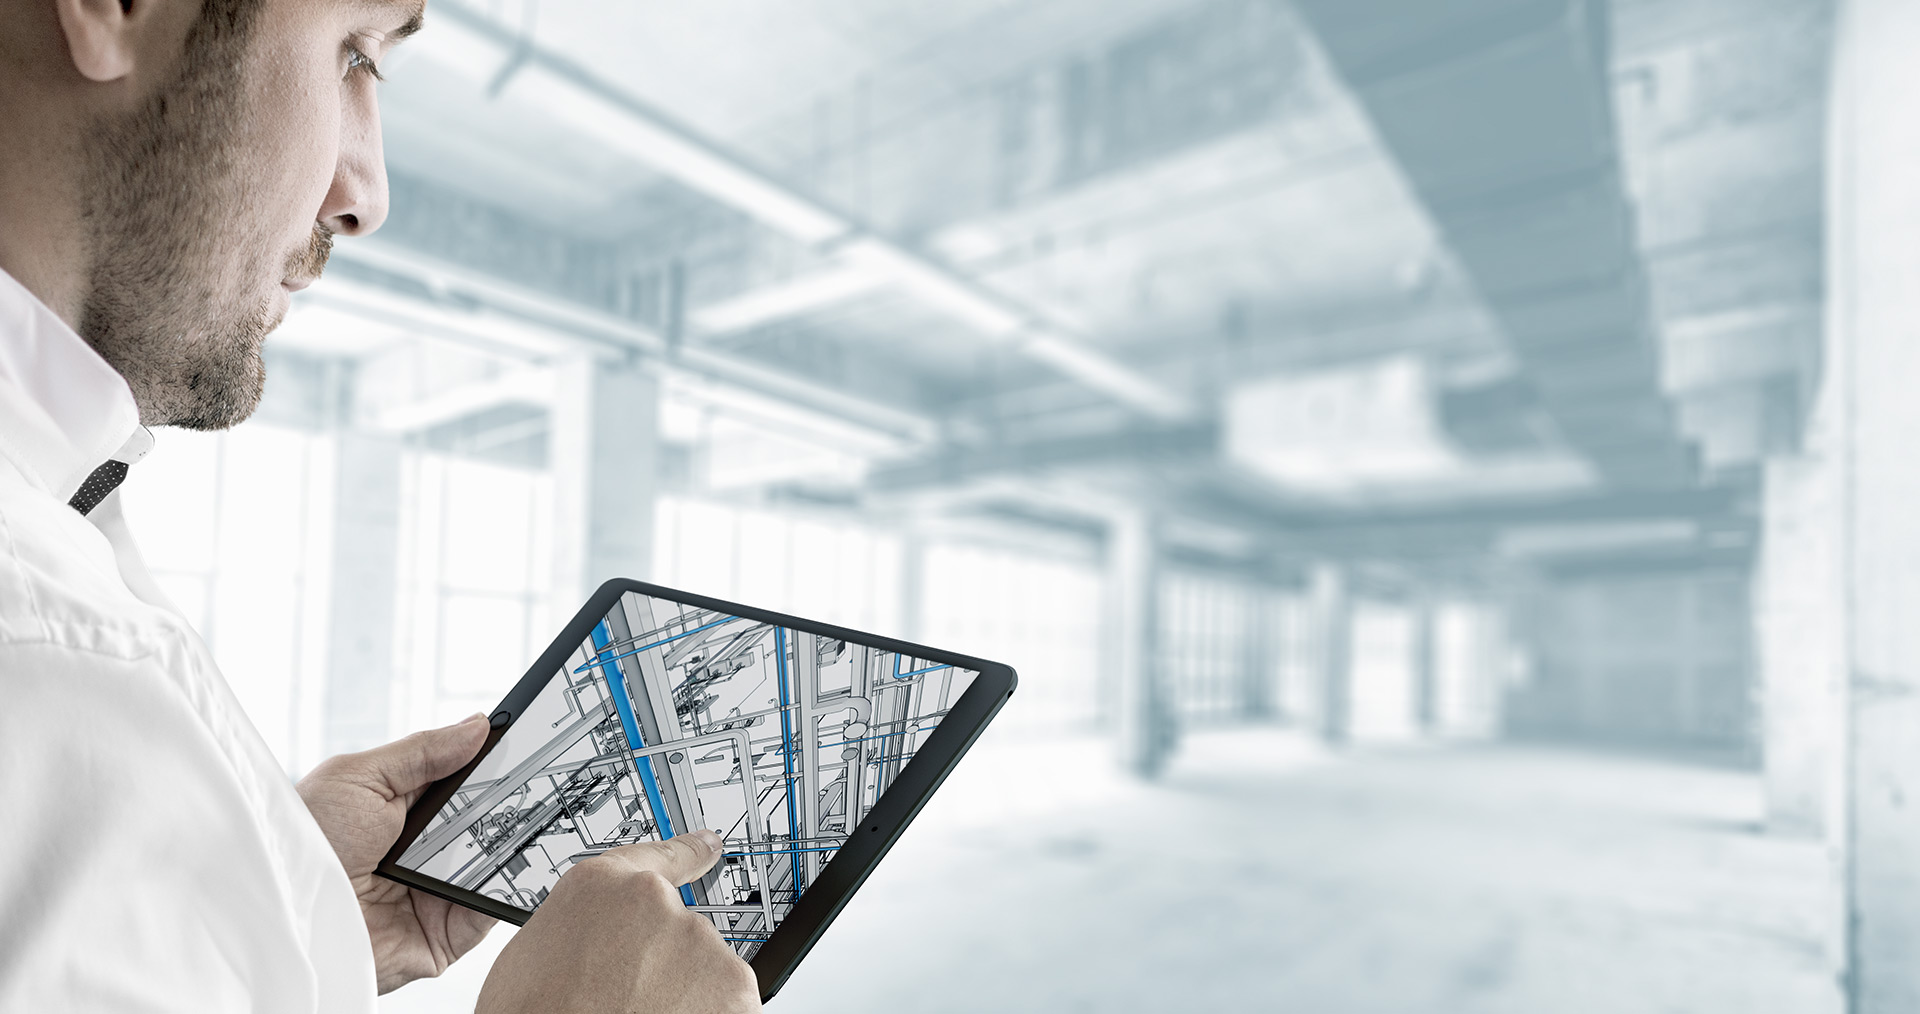 Bauprojekte vernetzt planen und bauen: Einfach und digital mit Building Information Modelling.